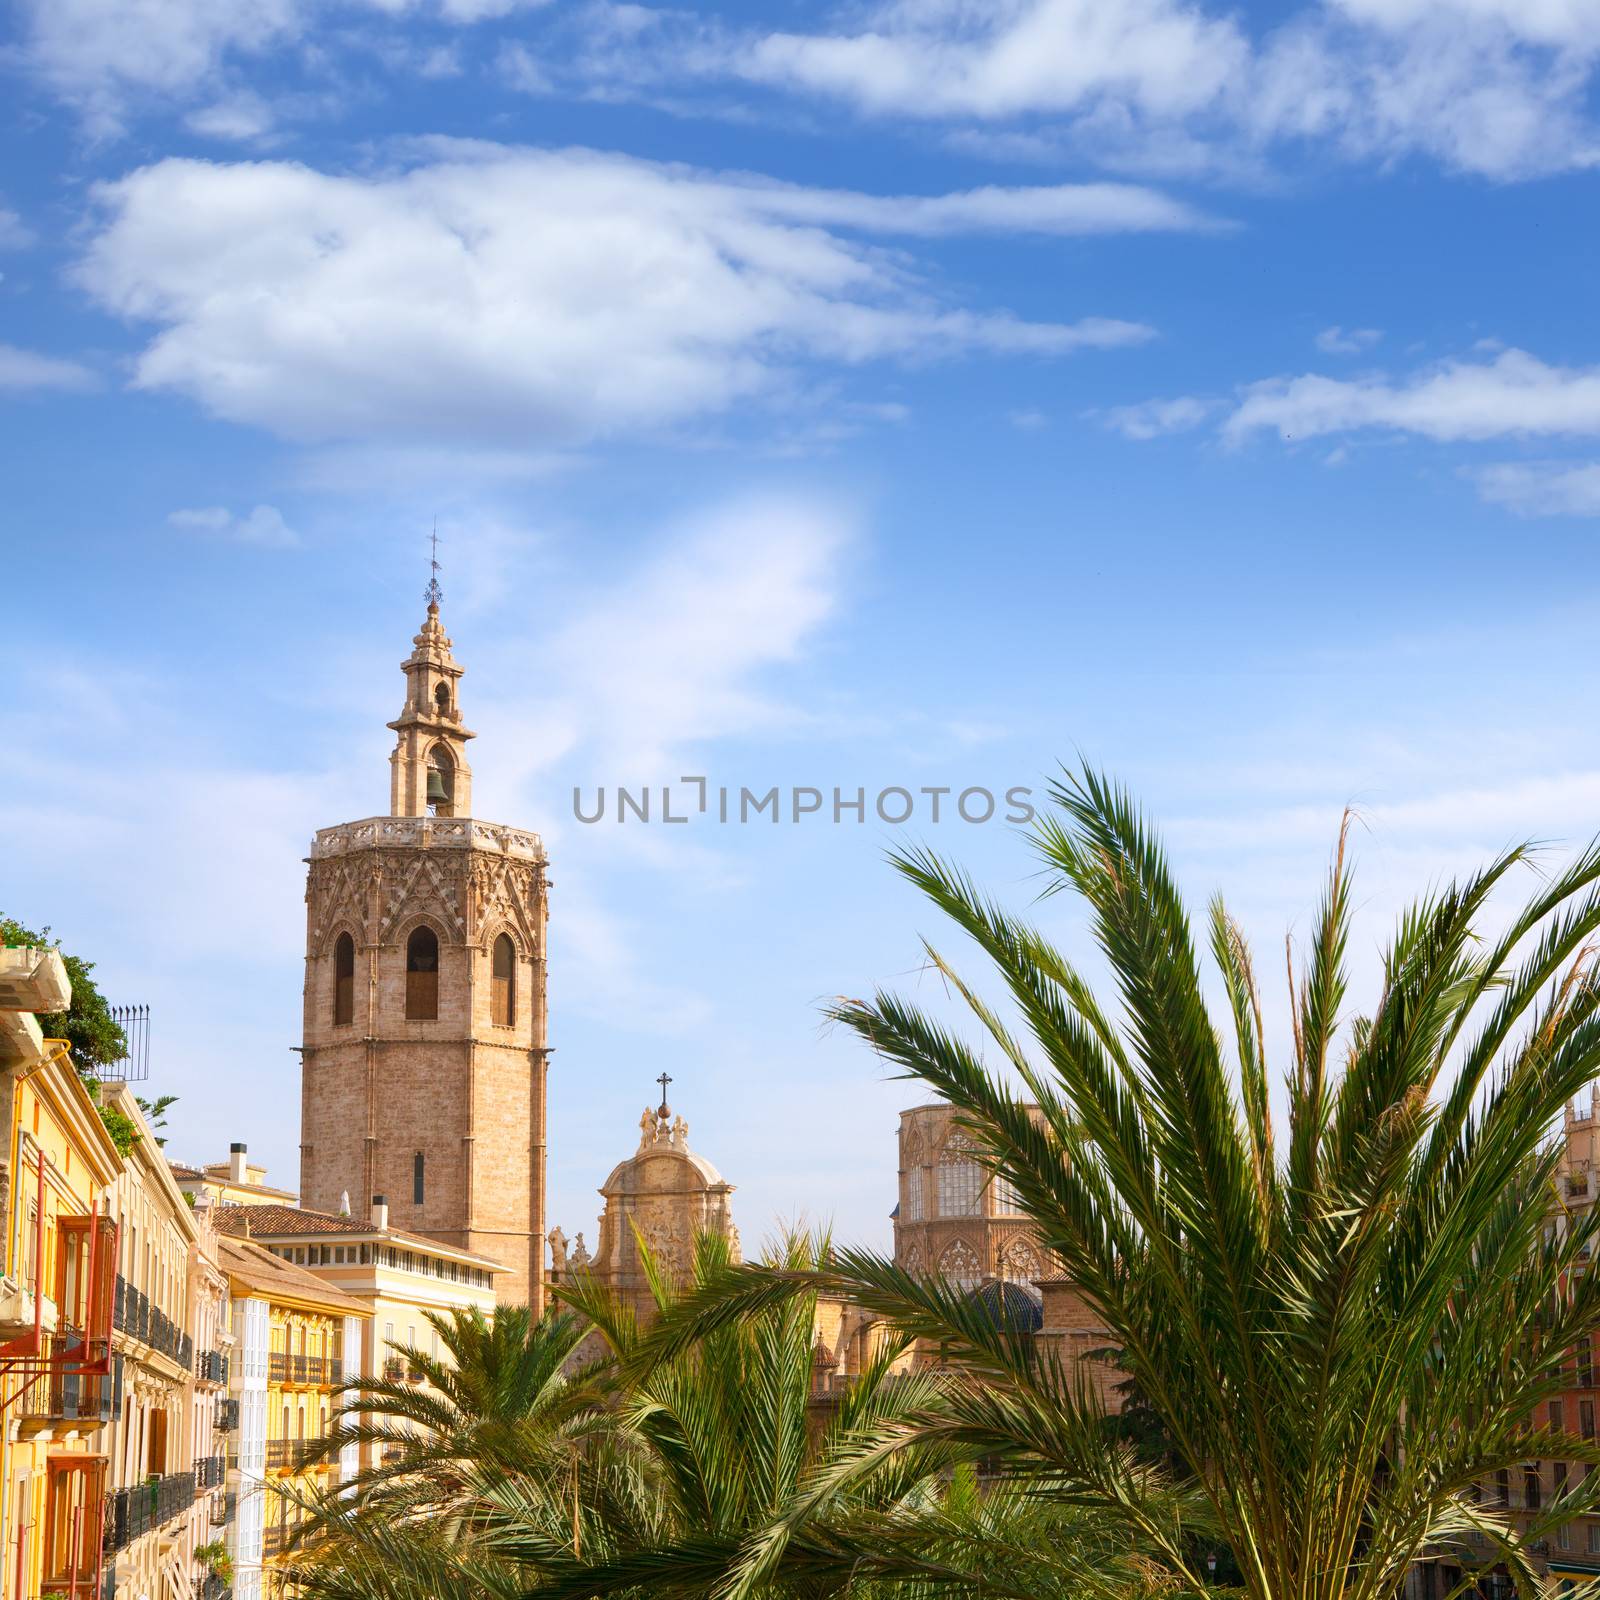 Valencia historic downtown El Miguelete and Cathedral Micalet de la Seu in spain